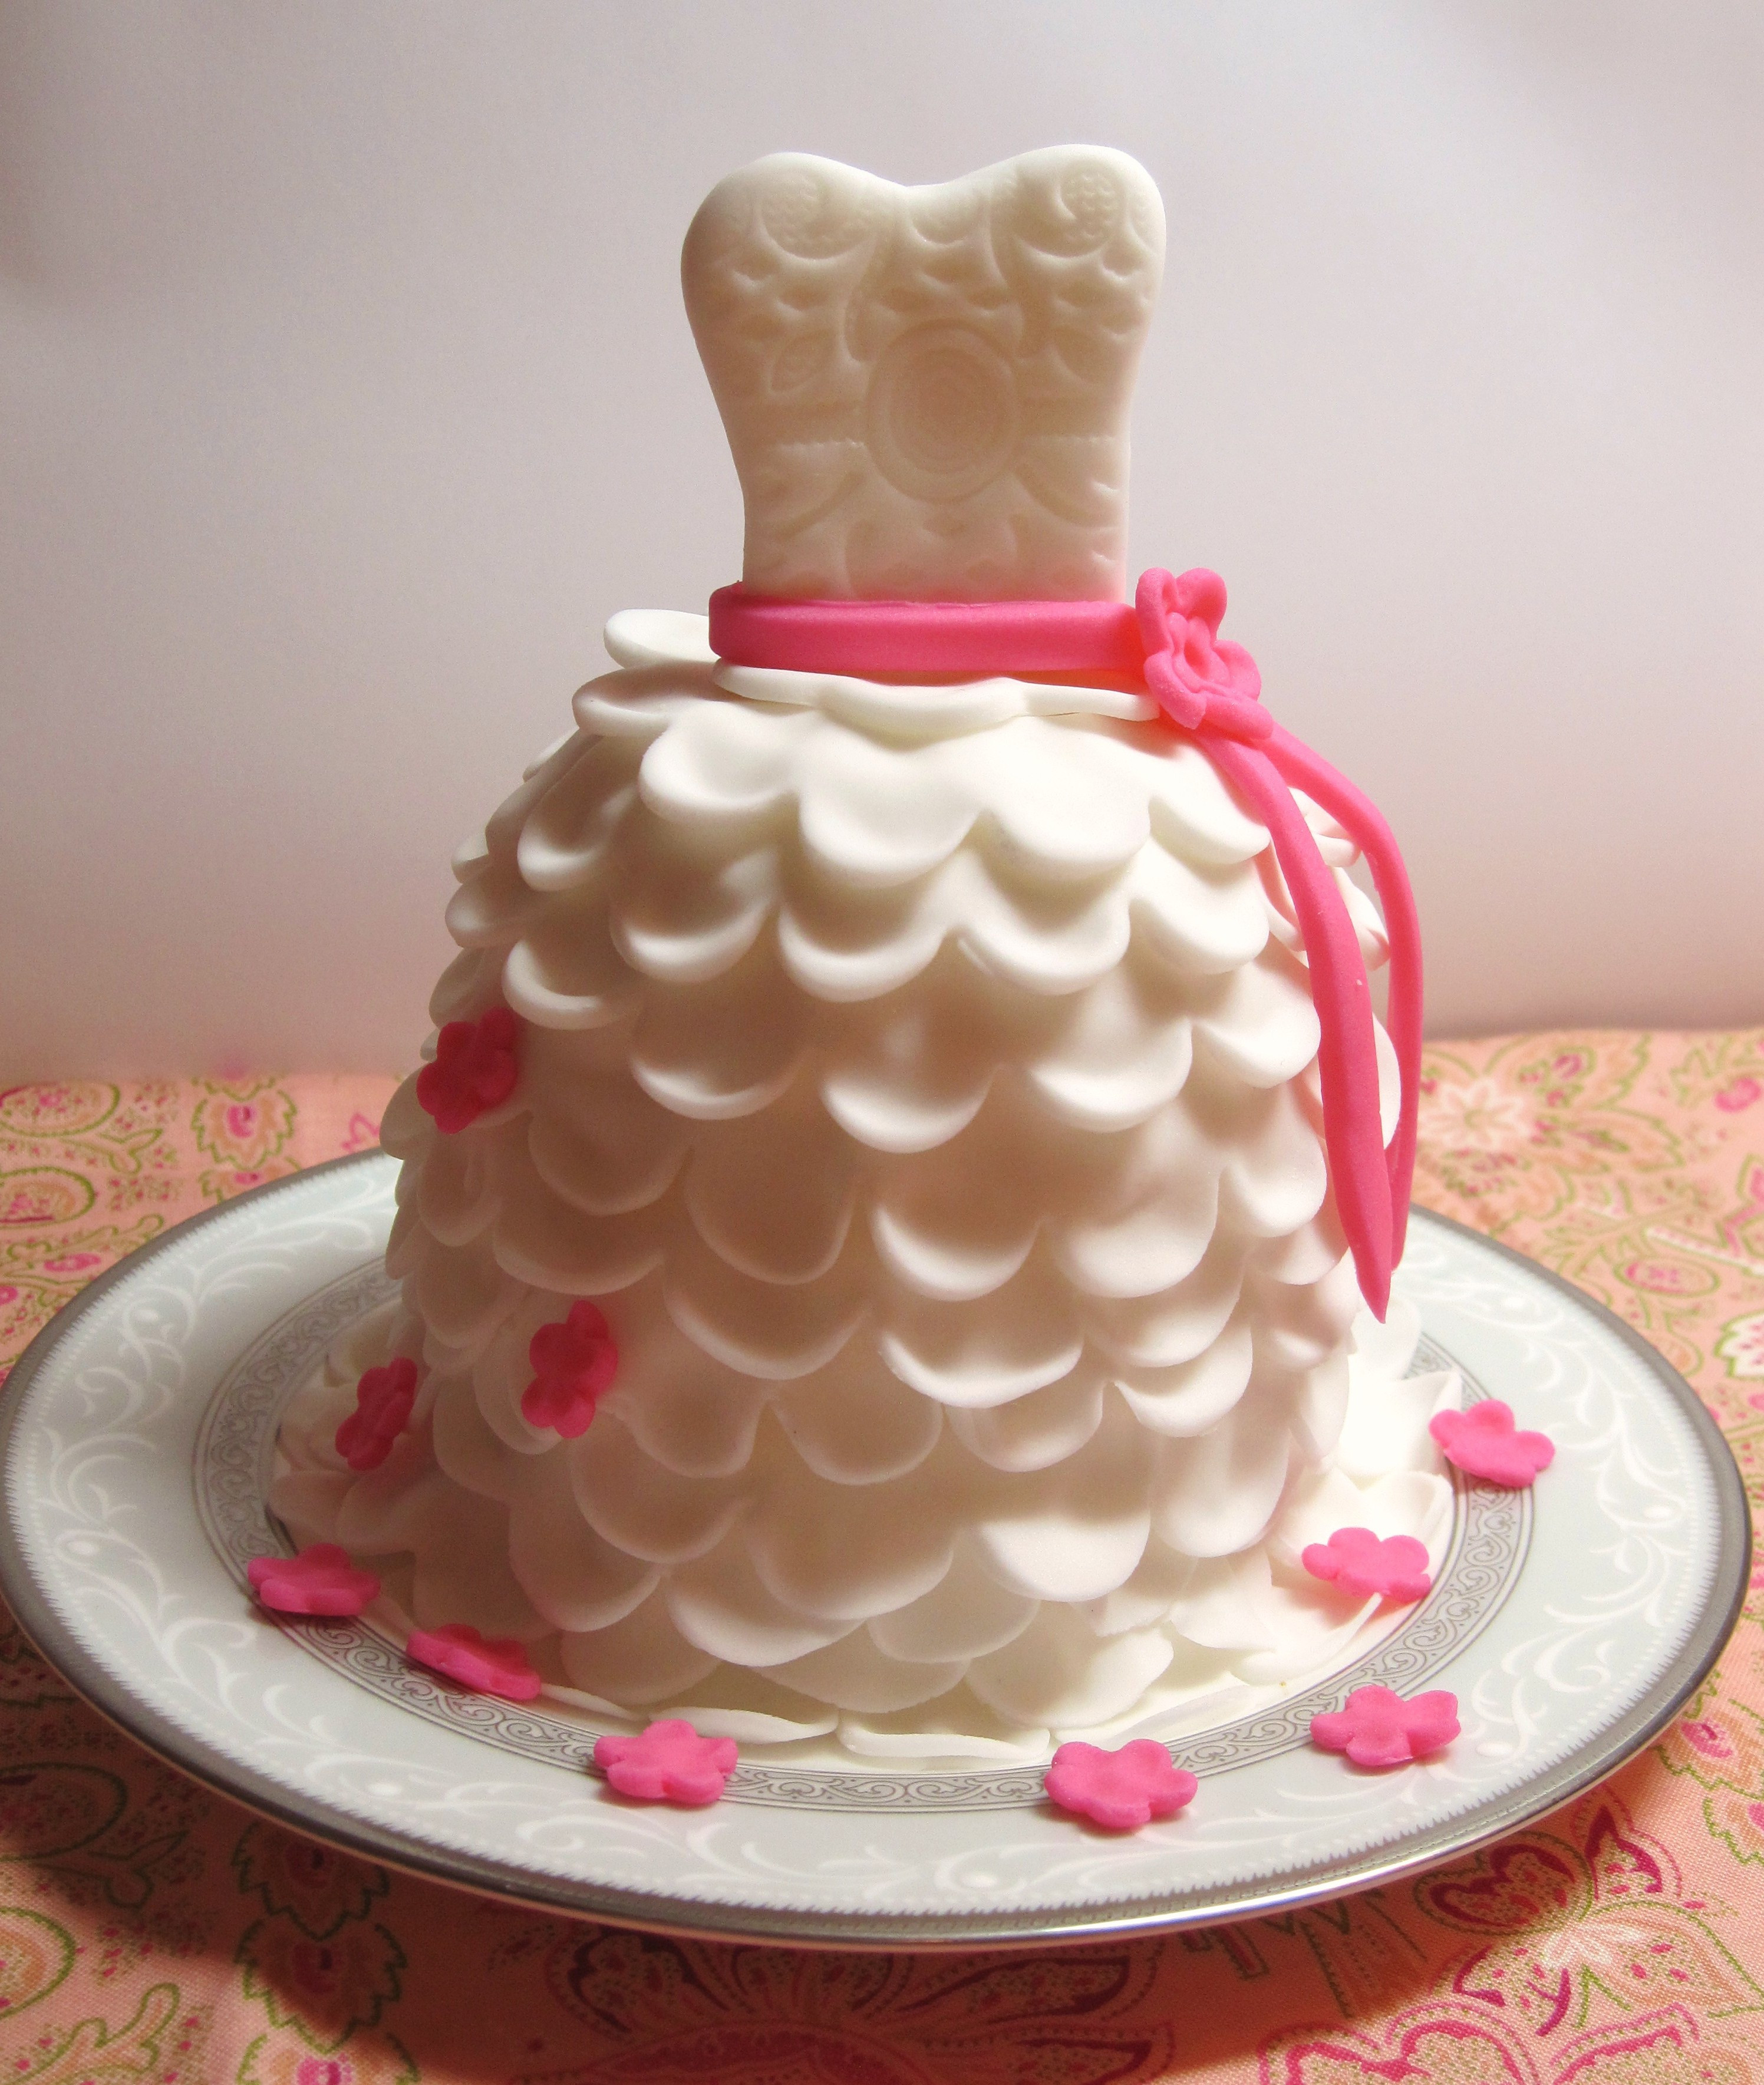 DIY Wedding Cupcakes
 DIY How to Make Beautiful Wedding Dress Cupcakes with